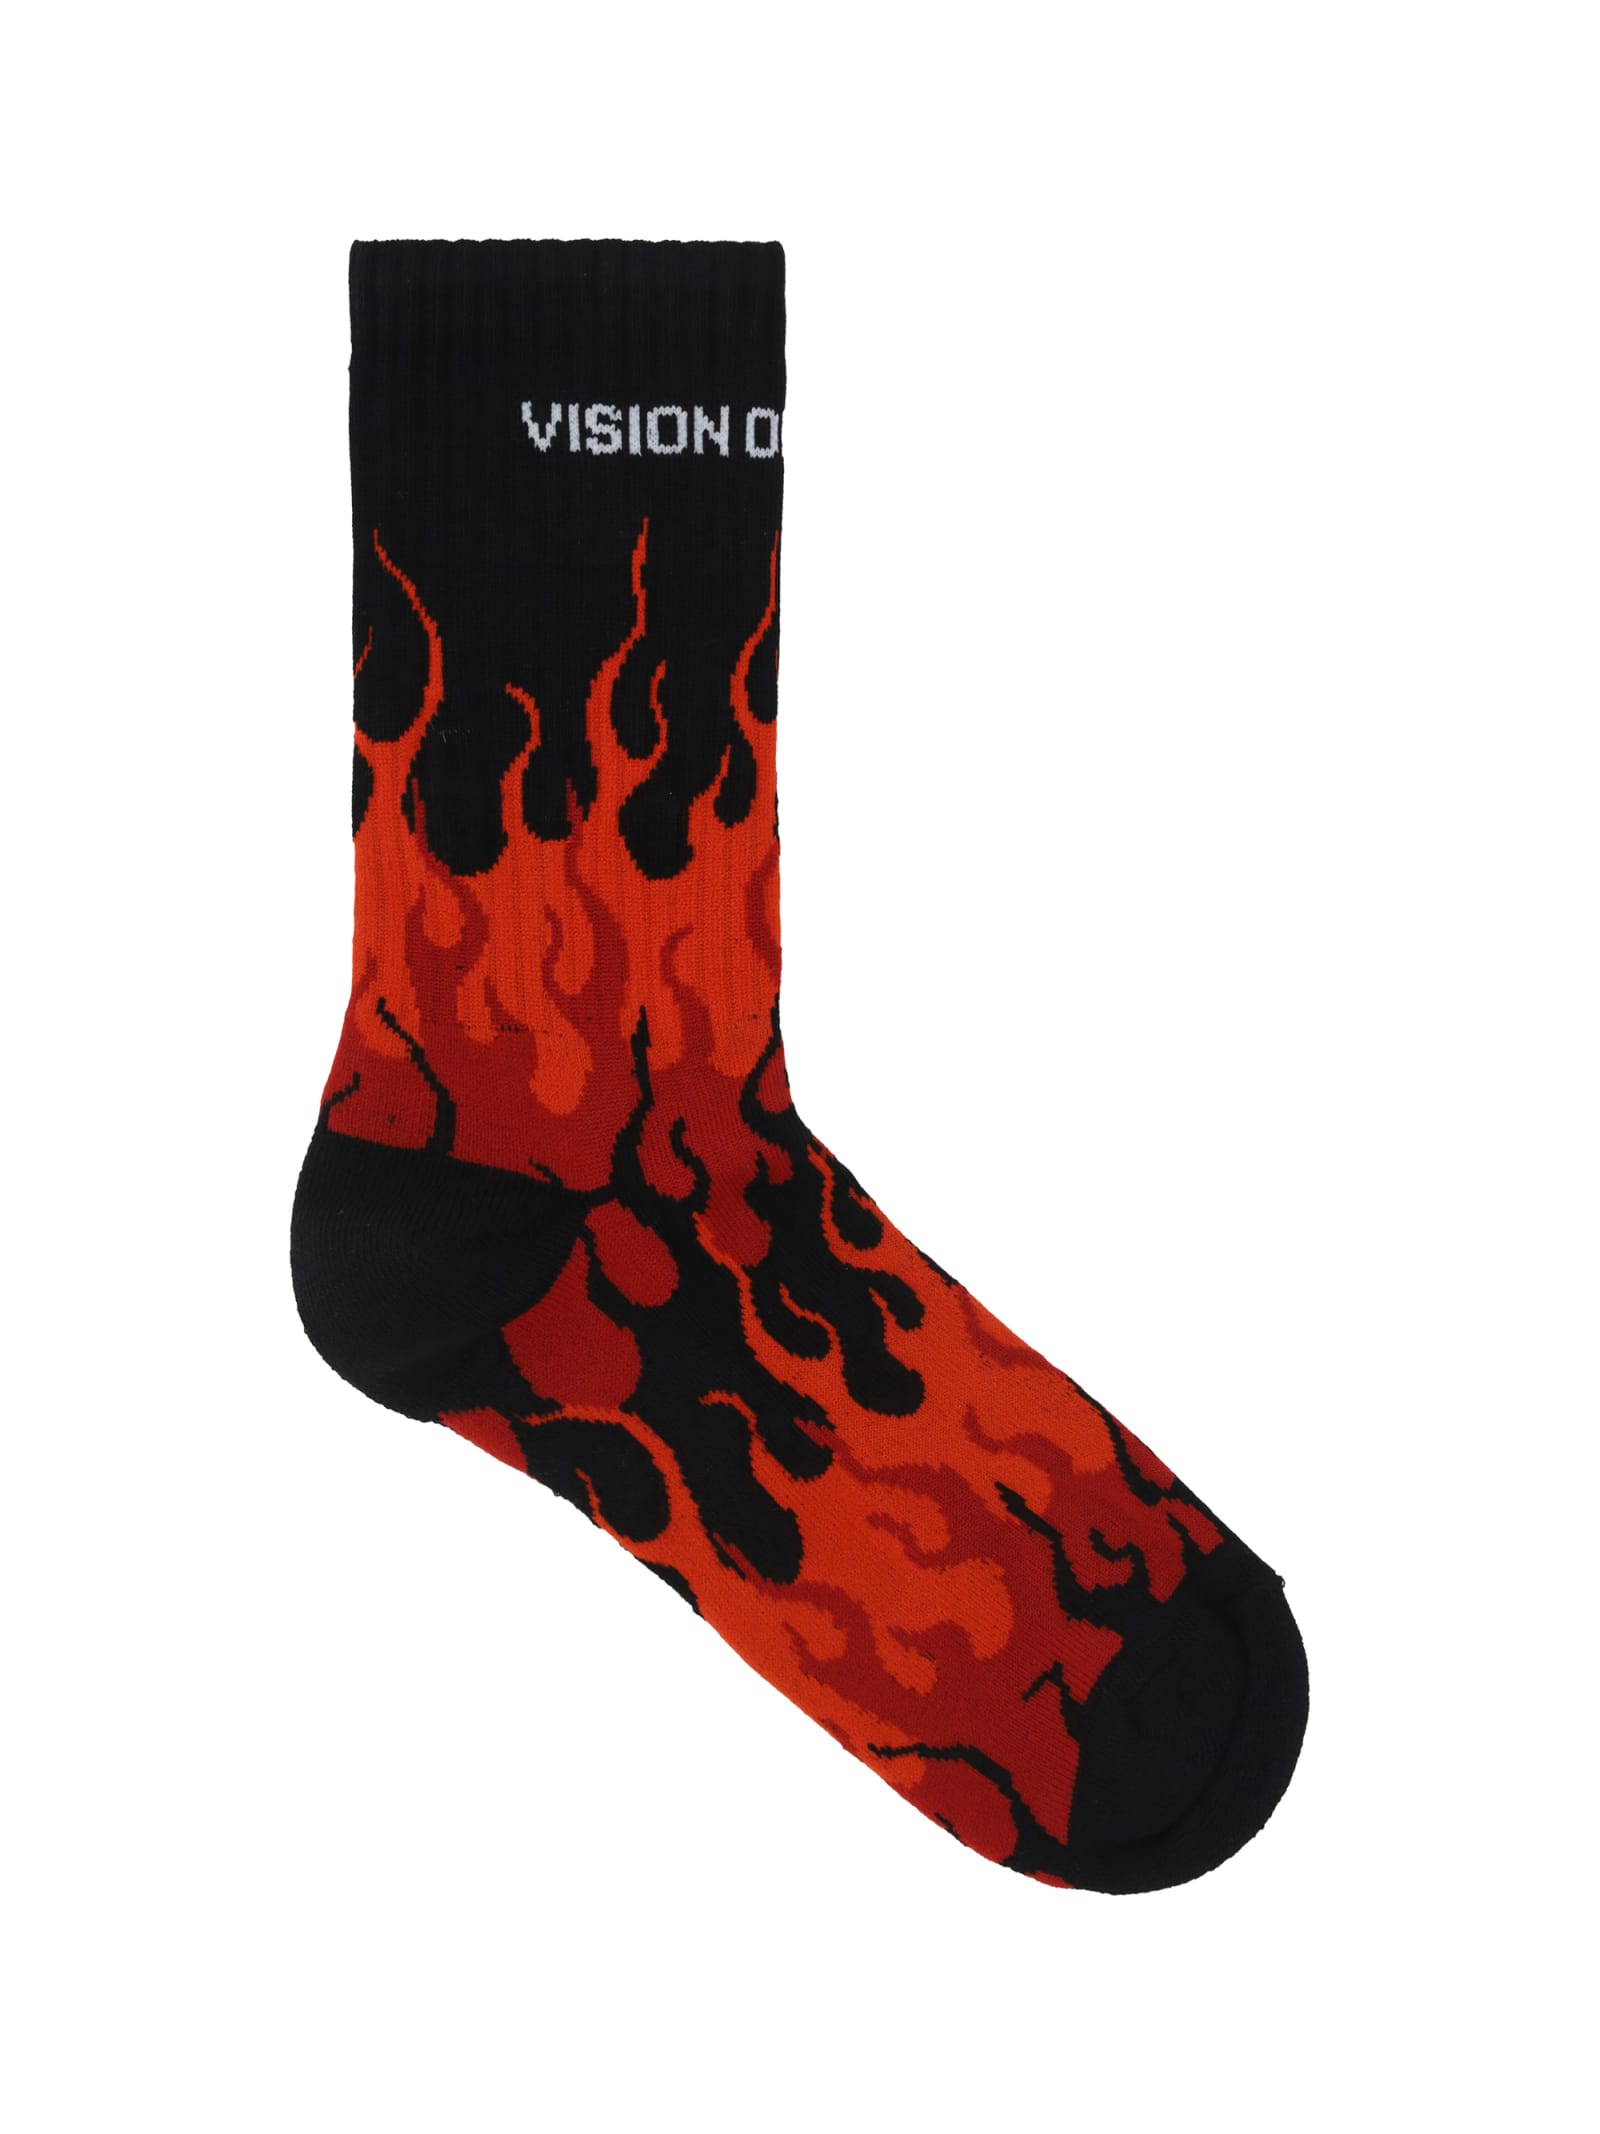 Vision of Super Socks